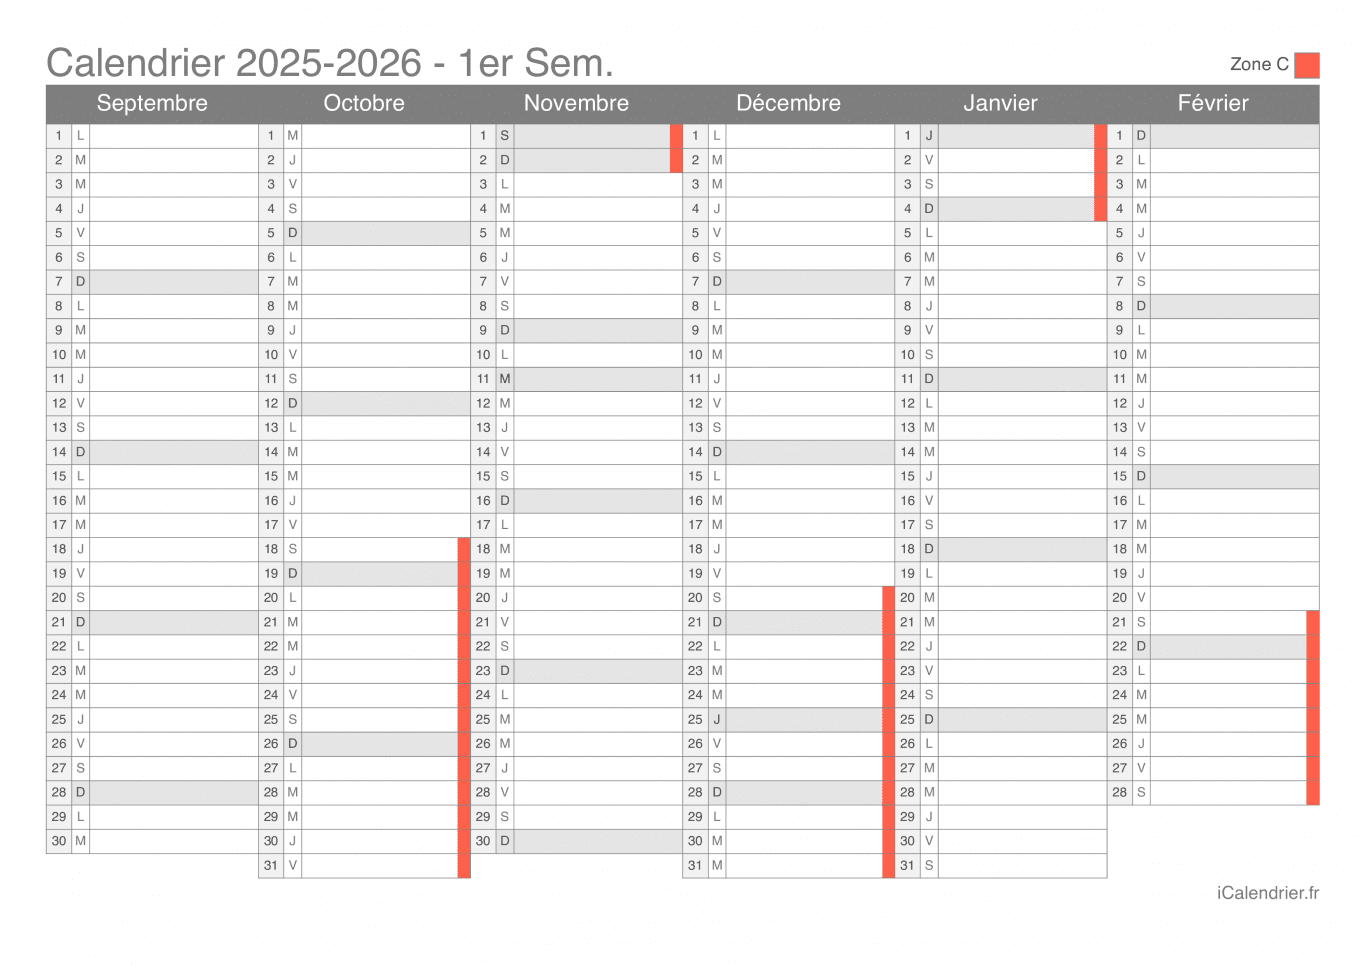 Calendrier des vacances scolaires 2025-2026 par semestre de la zone C